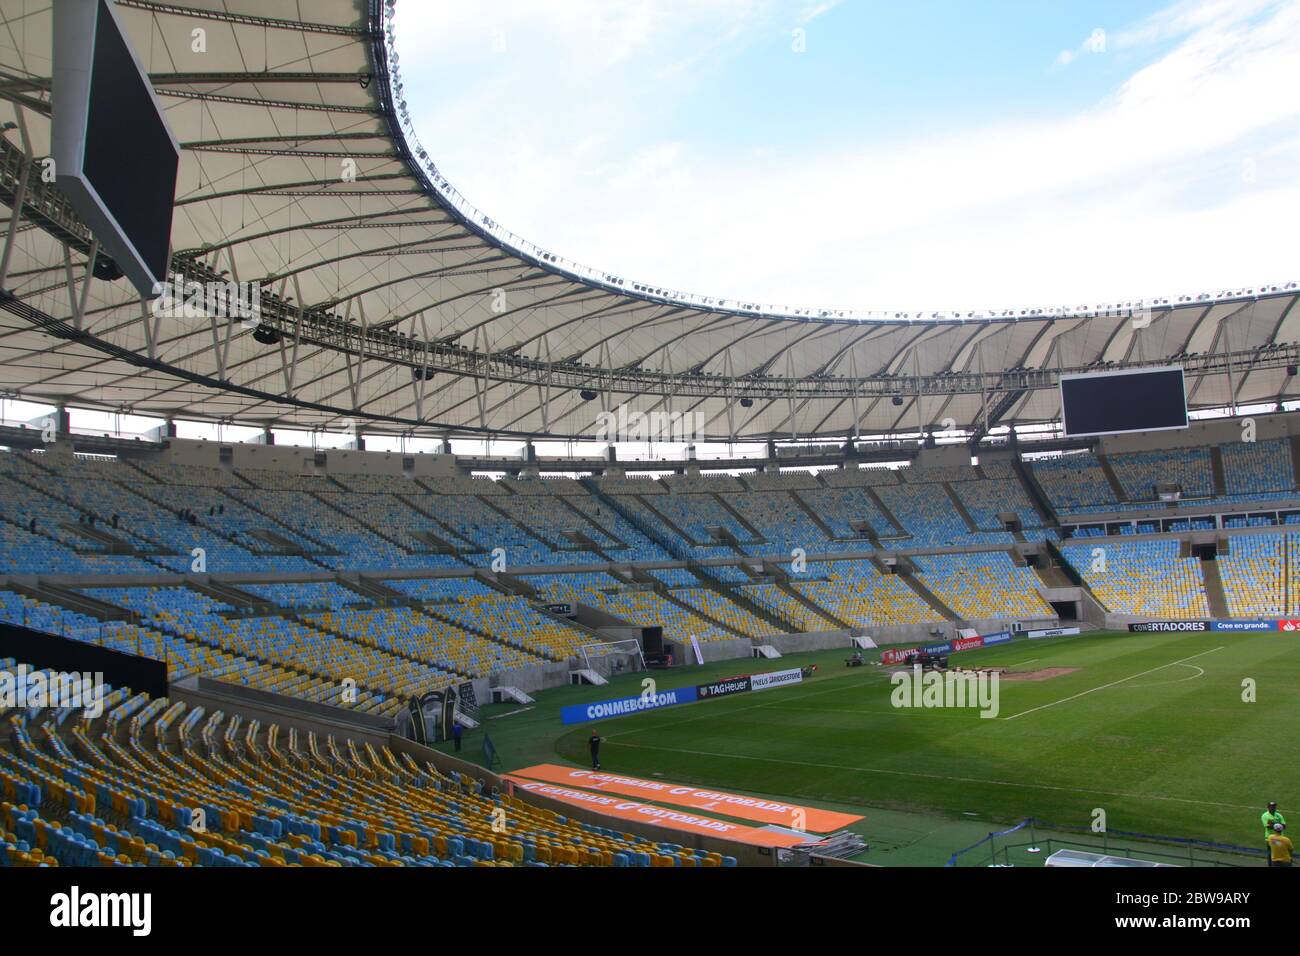 Estádio Jornalista Mário Filho Maracana stadium, Rio de Janeiro, Brazil Stock Photo